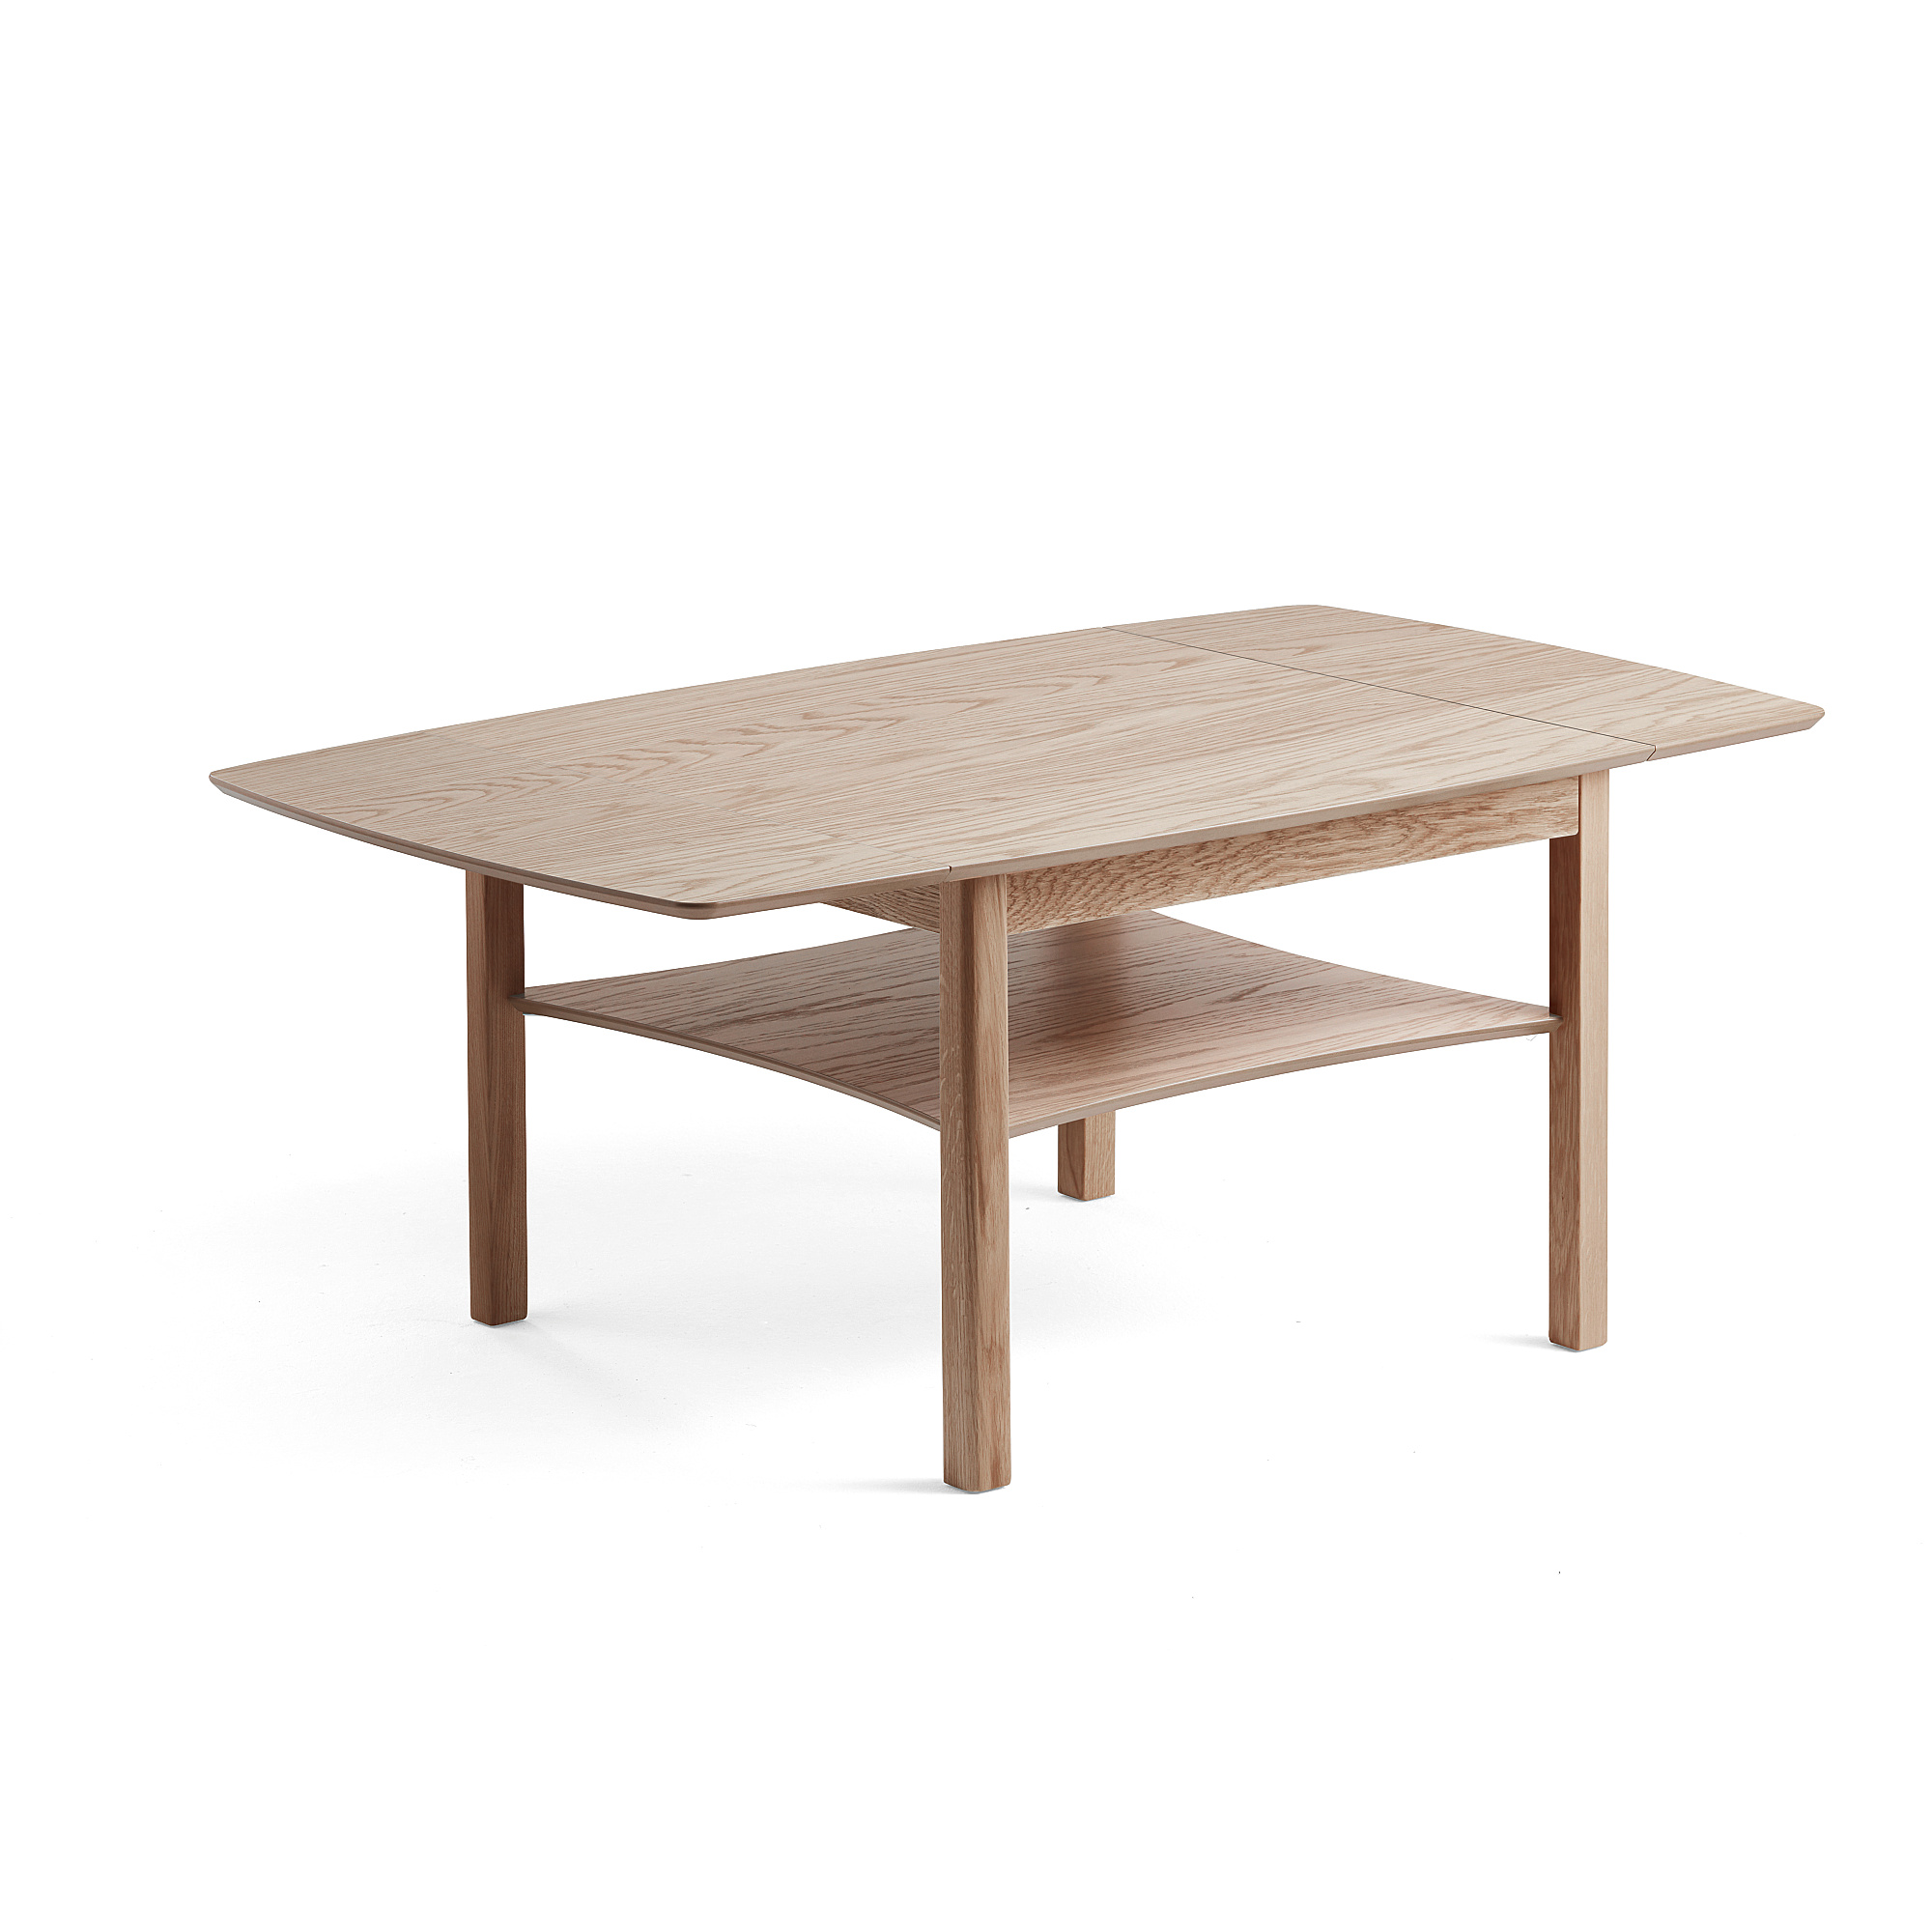 Konferenční stolek MARATHON, sklápěcí, 1350x800 mm, bíle pigmentovaný dub